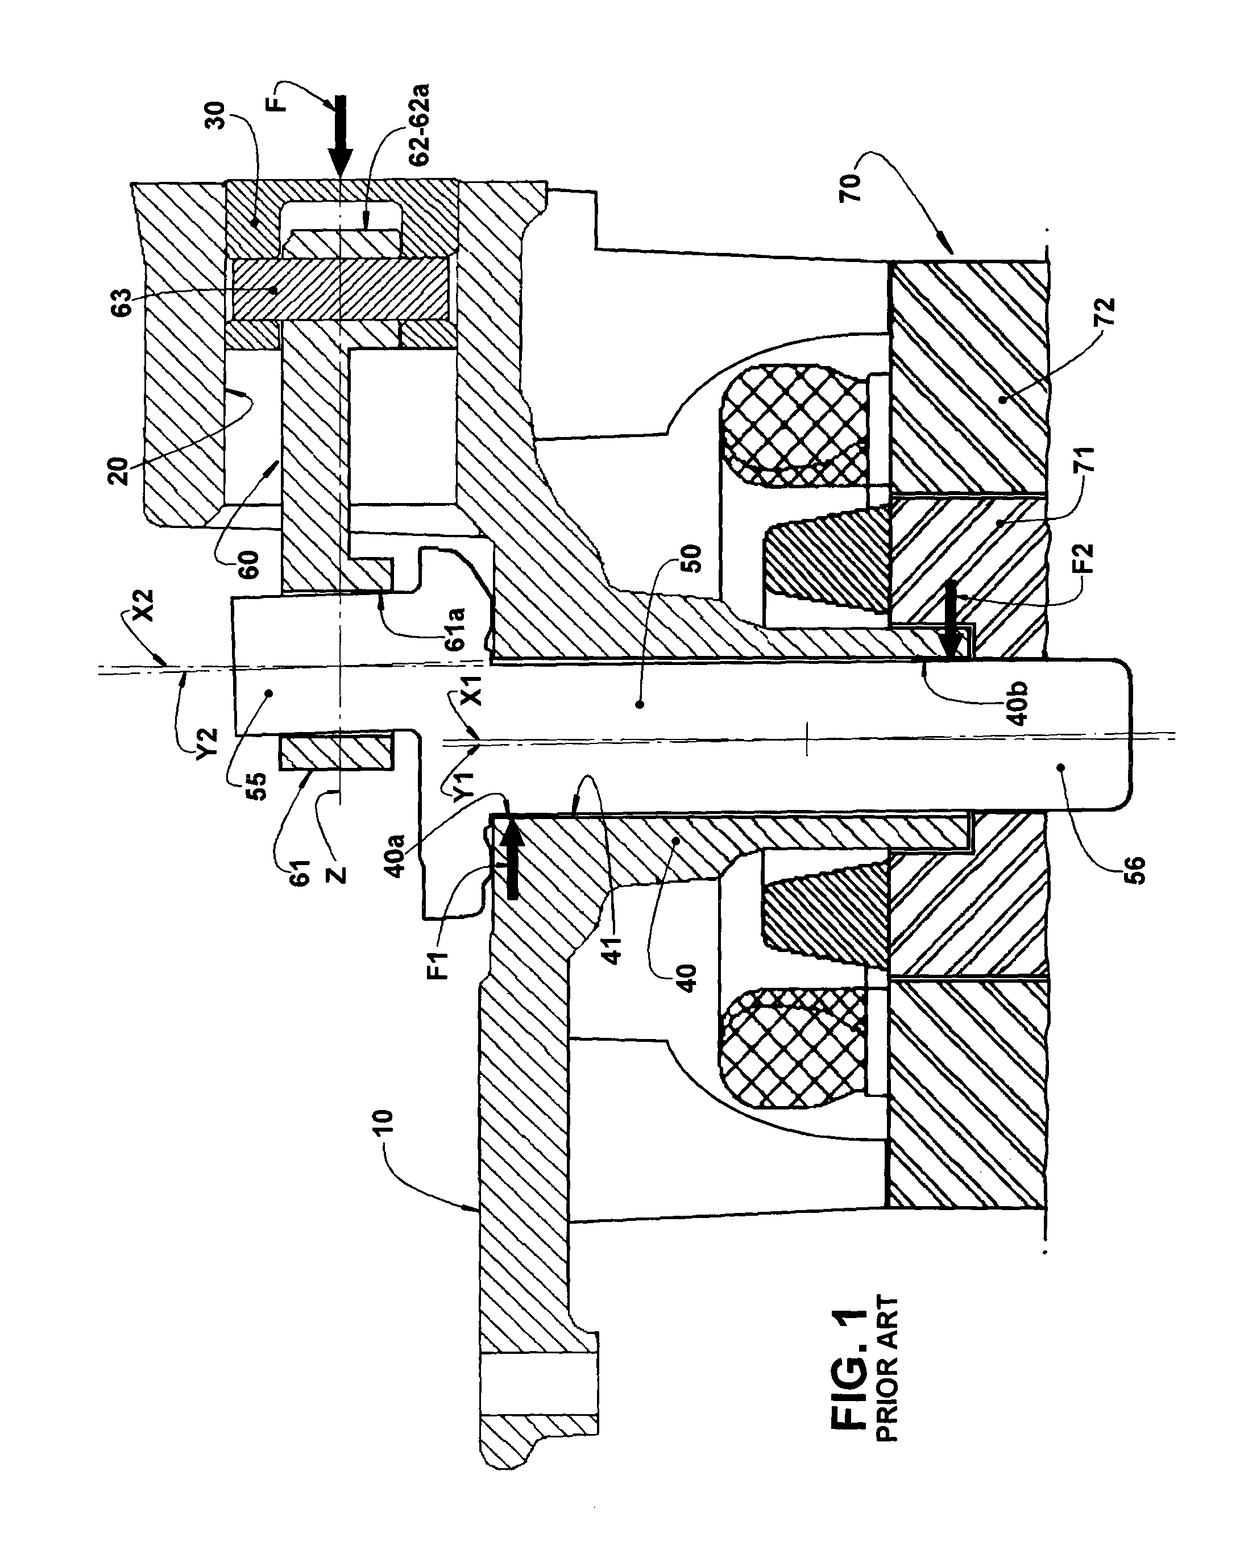 Bearing arrangements in a refrigeration reciprocating compressor